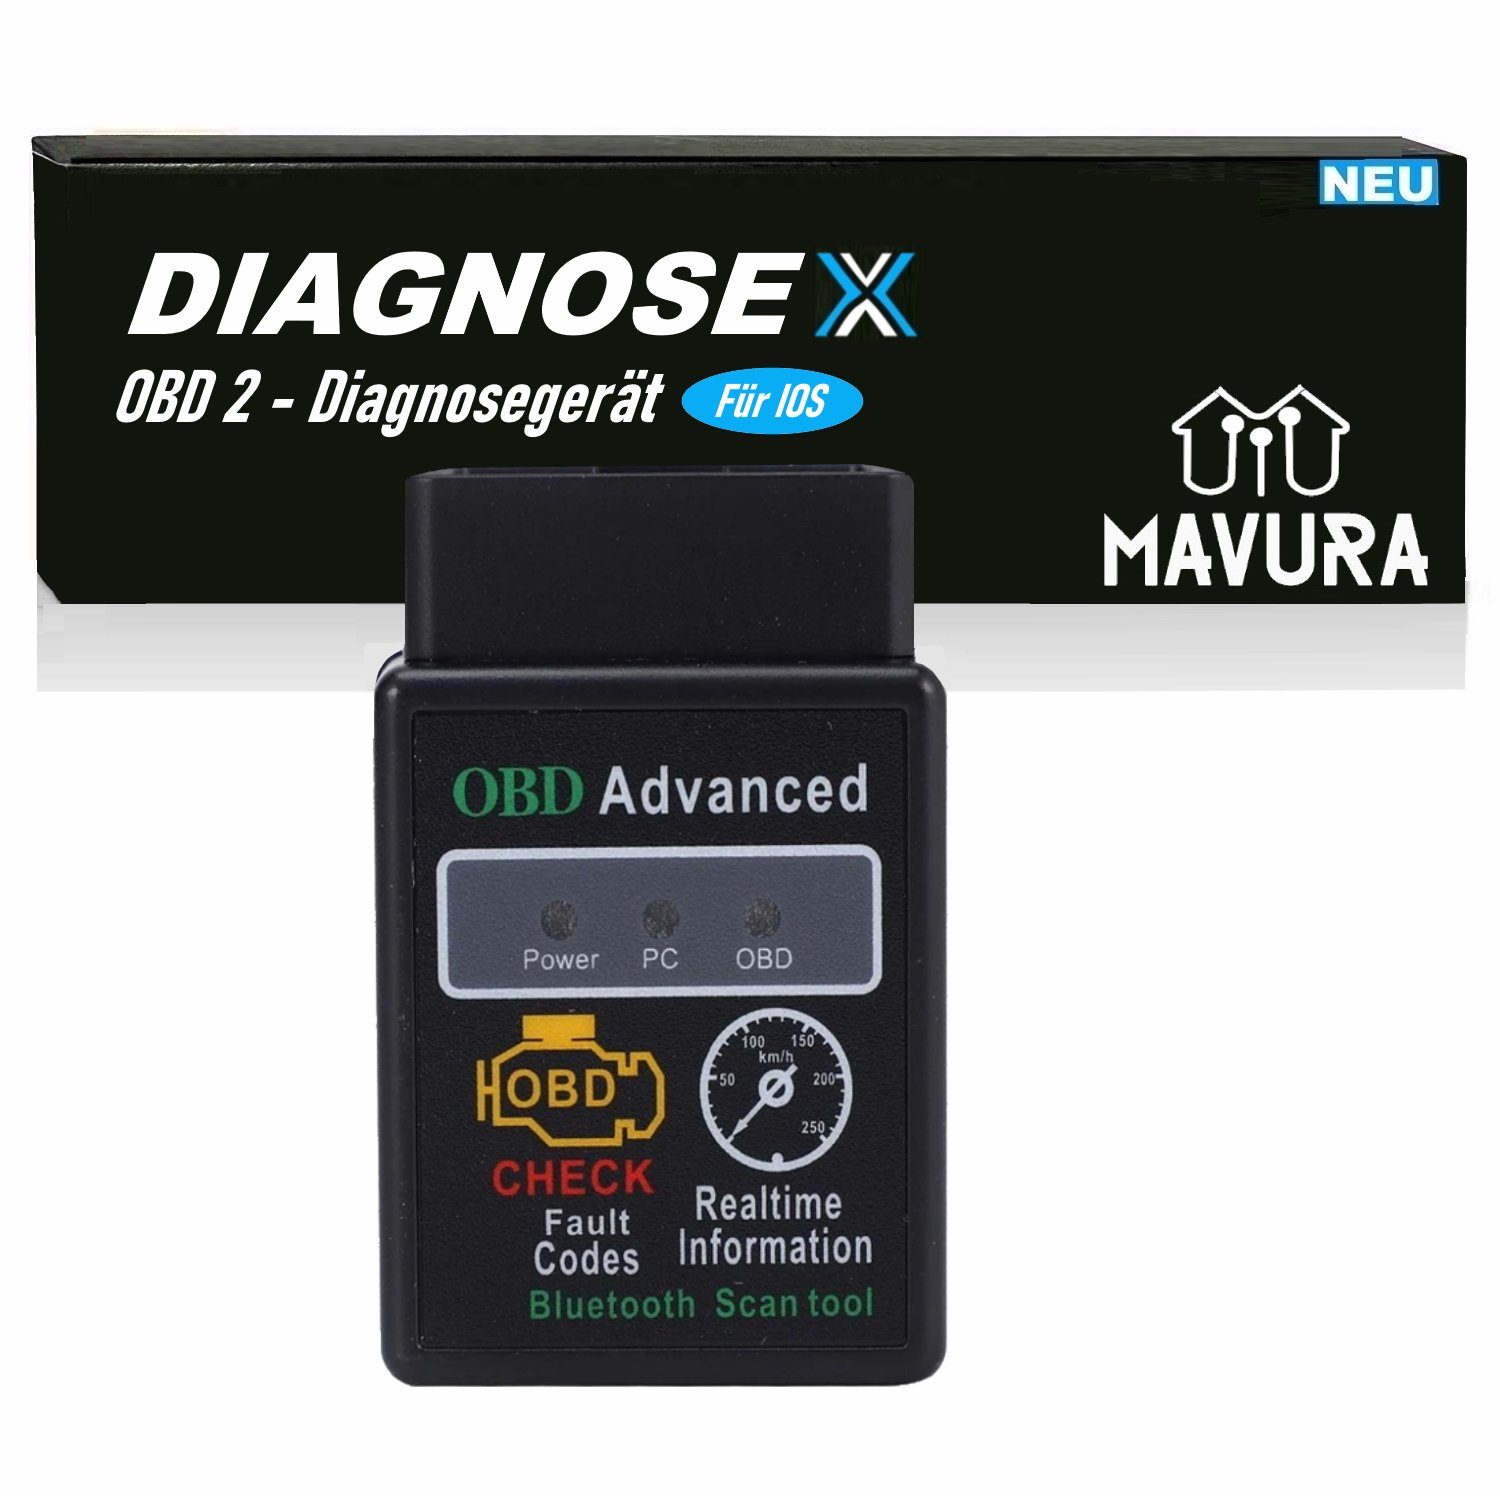 OBD2-Diagnosegerät Handy MAVURA DIAGNOSEX Adapter Autoscan Gerät für Diagnose Bluetooth Auslesegerät, Apple Iphone Diagnosegerät Auto iOS OBD2 Smartphone